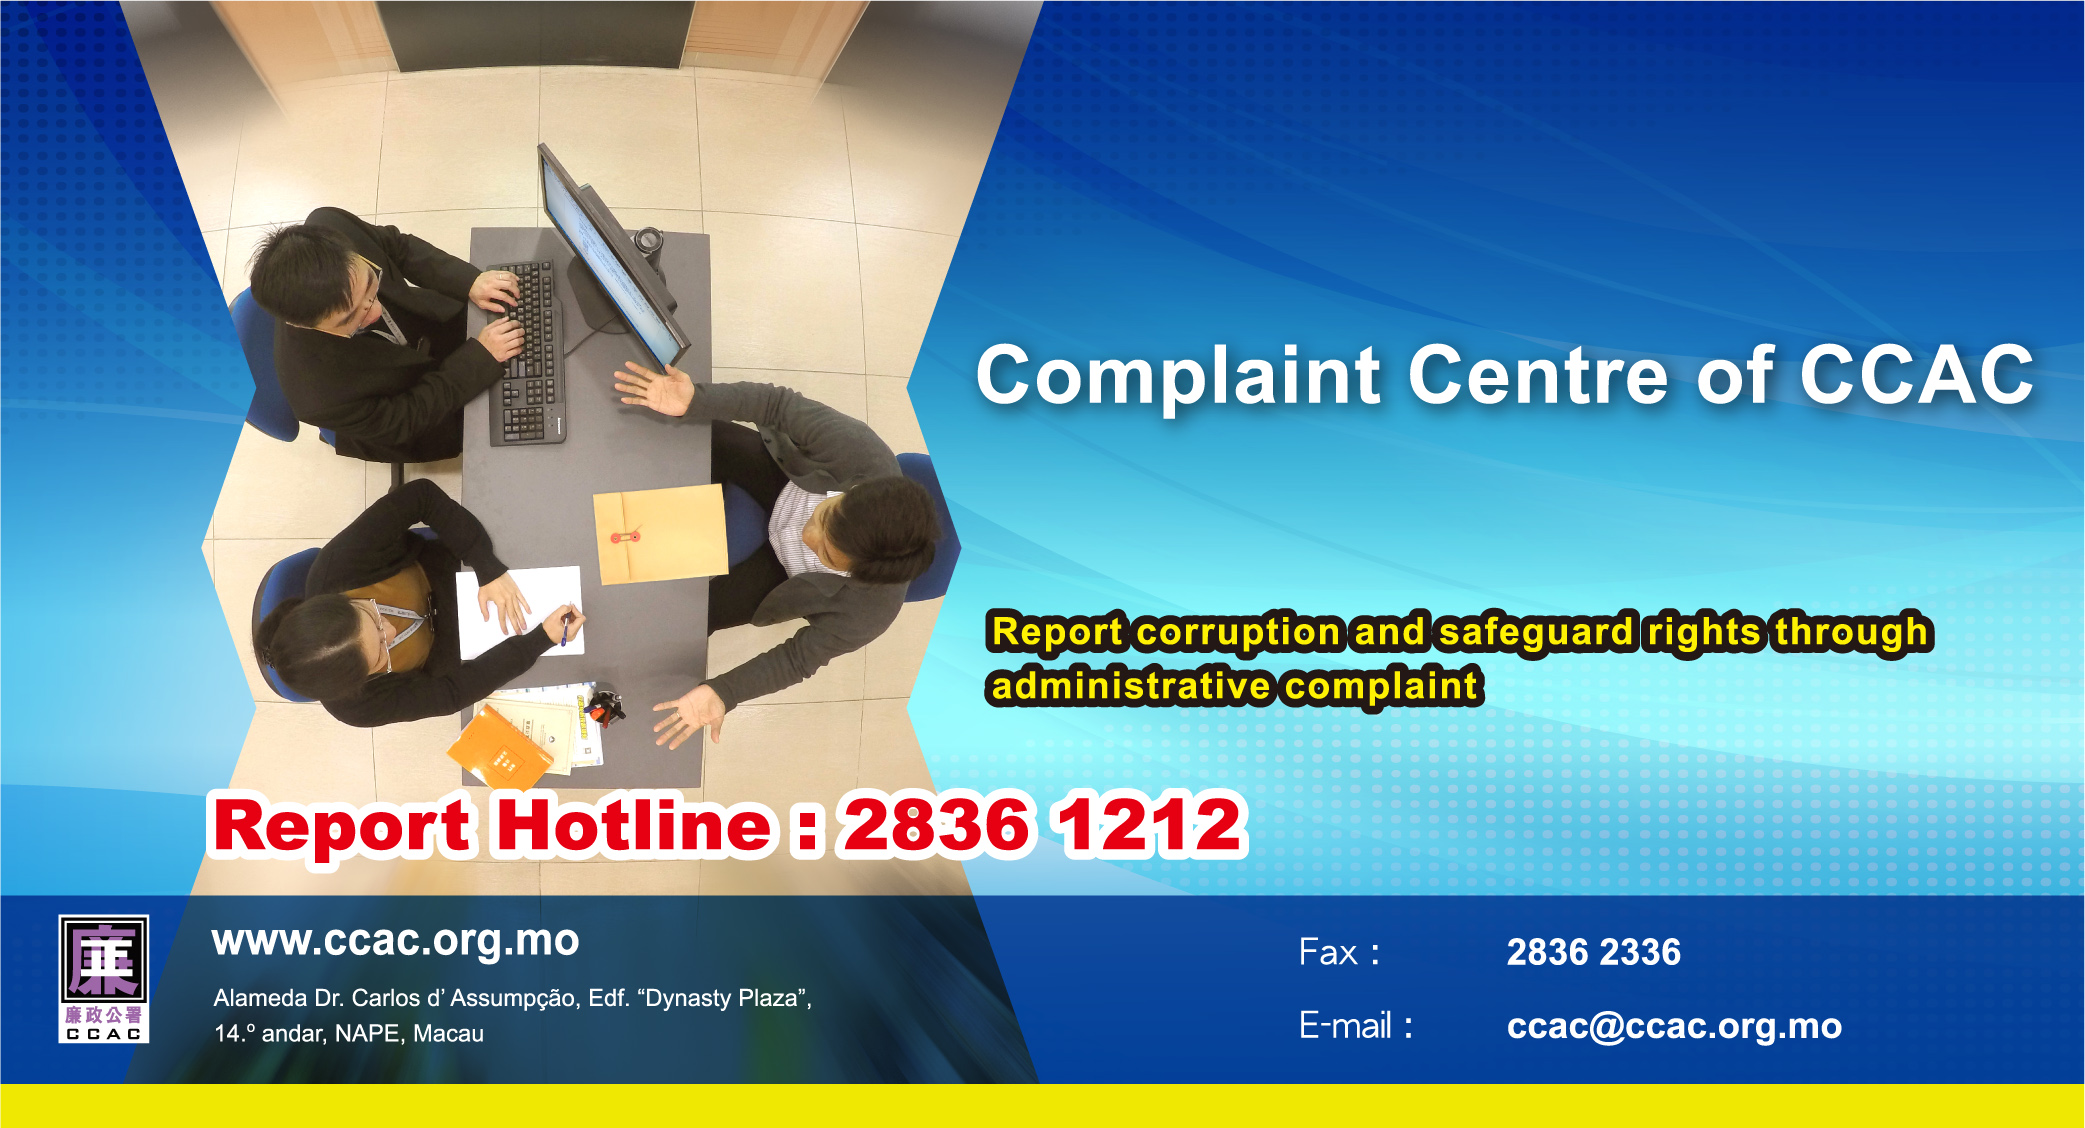 -Complaint Centre of CCAC